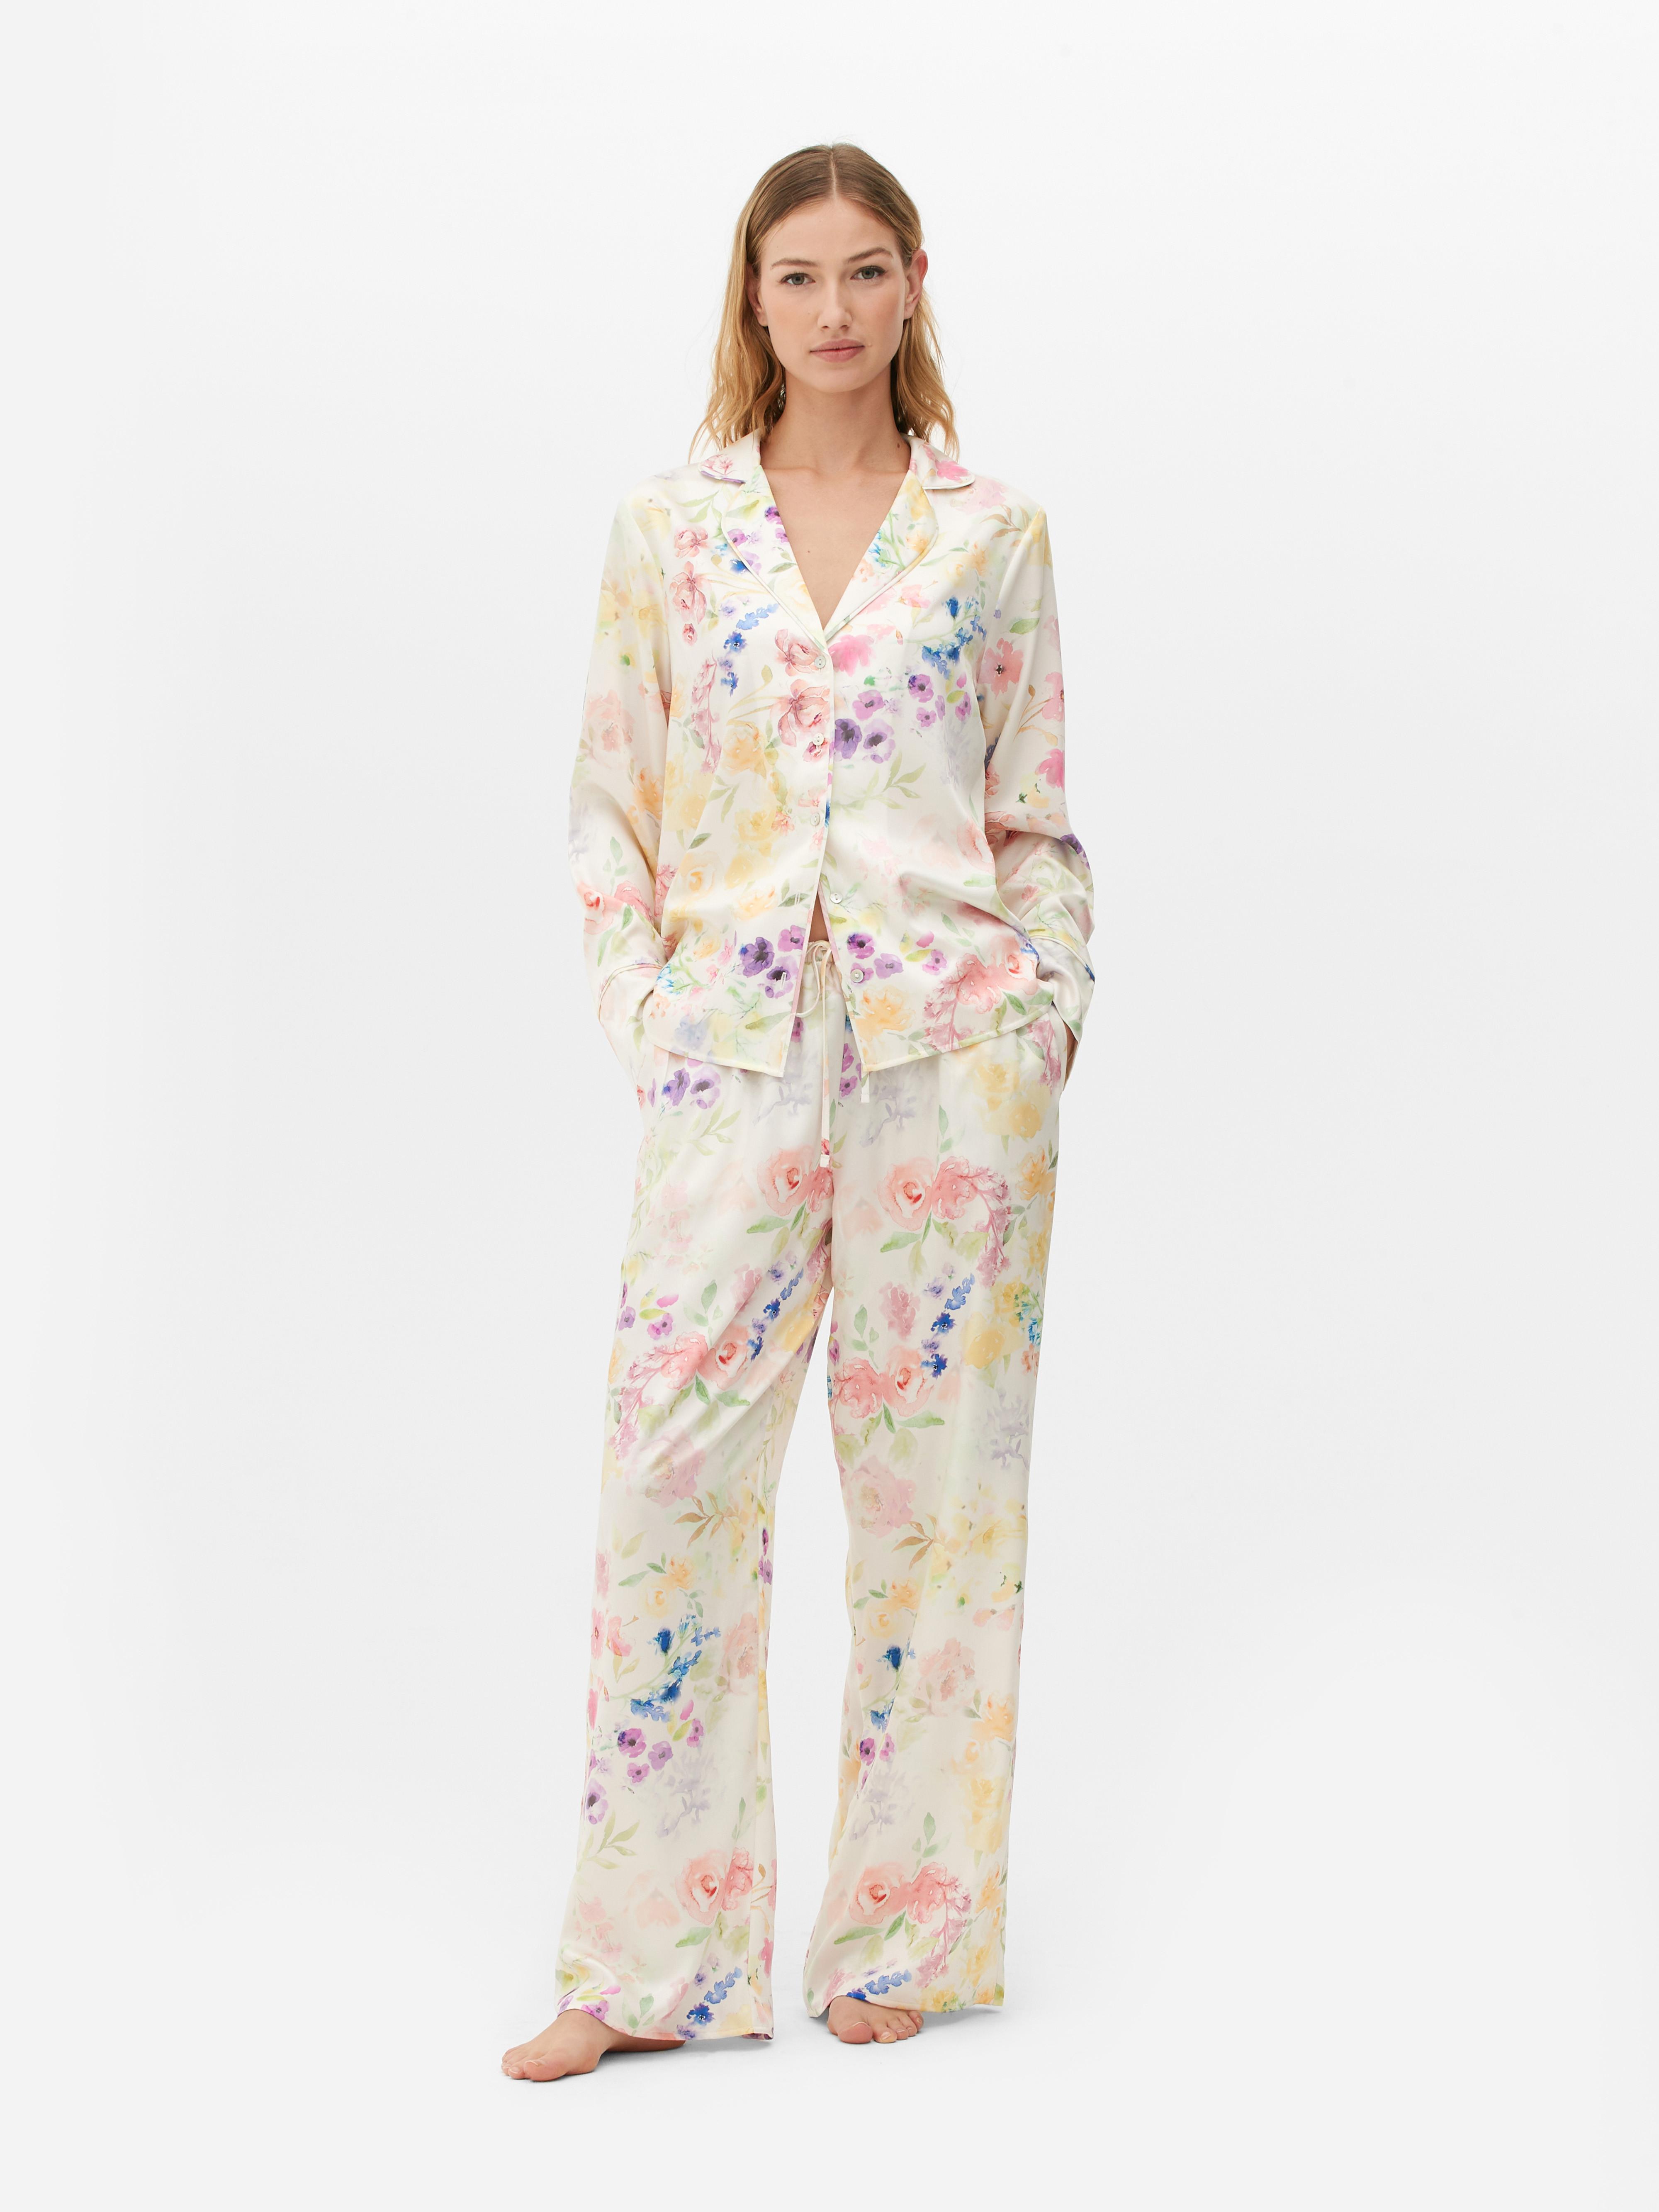 Floral Print Satin Pajama Shirt